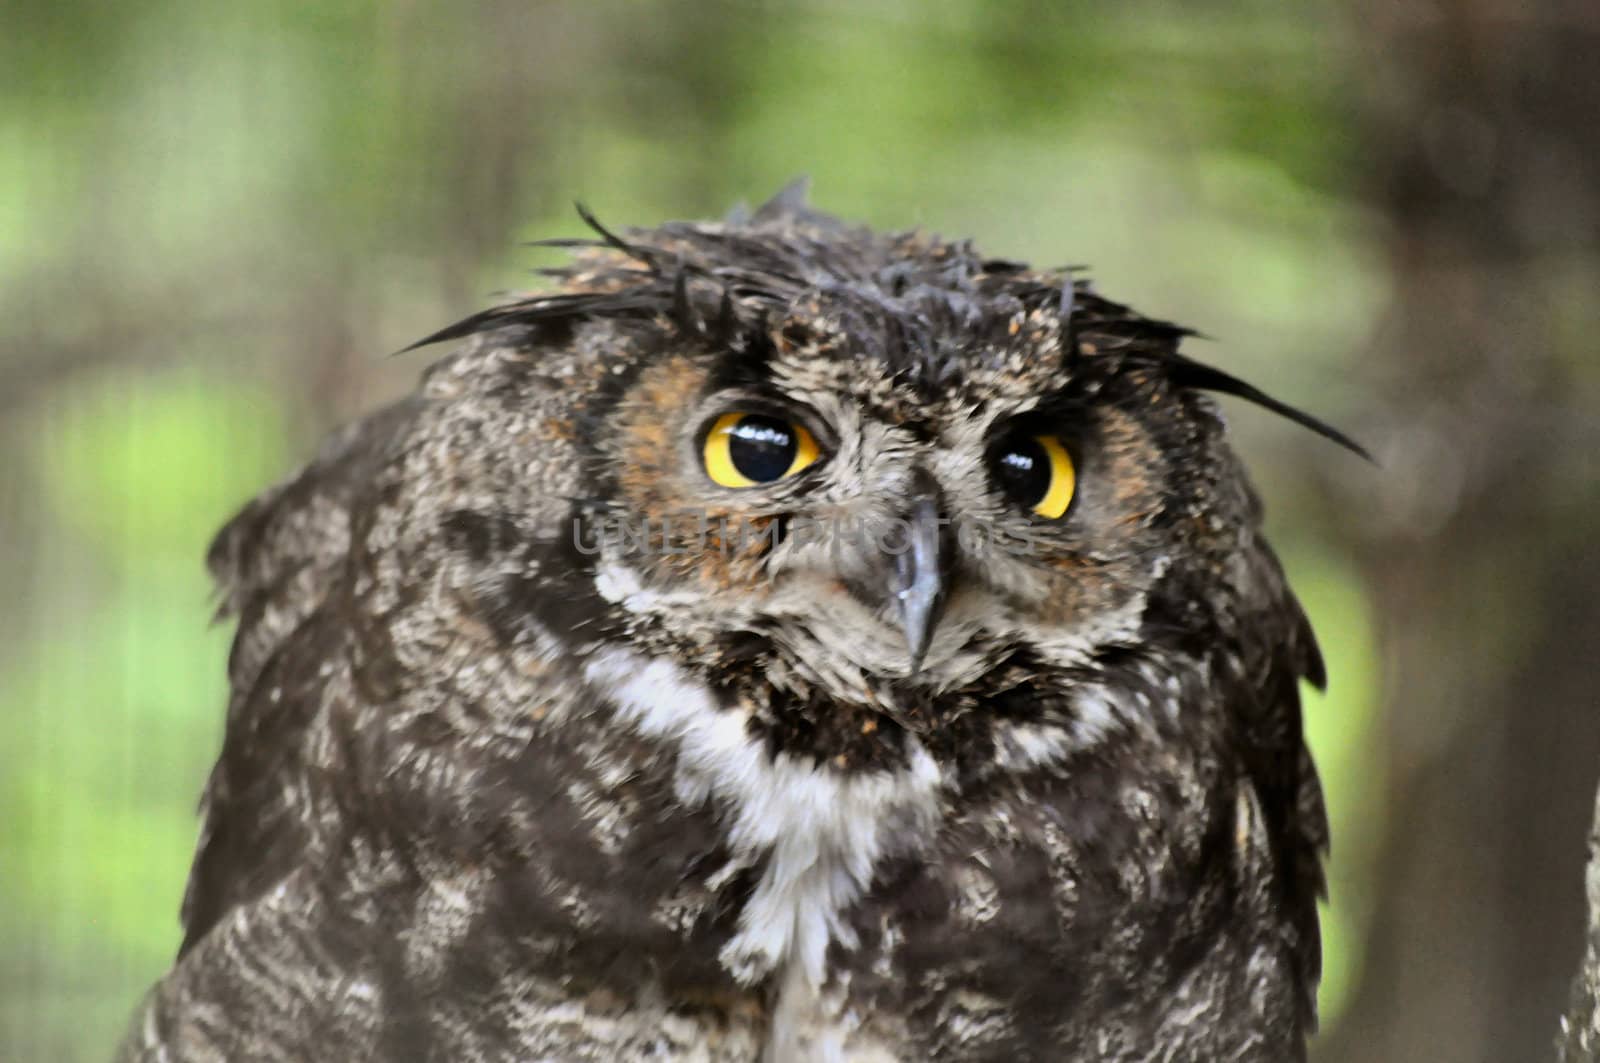 Owl eyes by RefocusPhoto